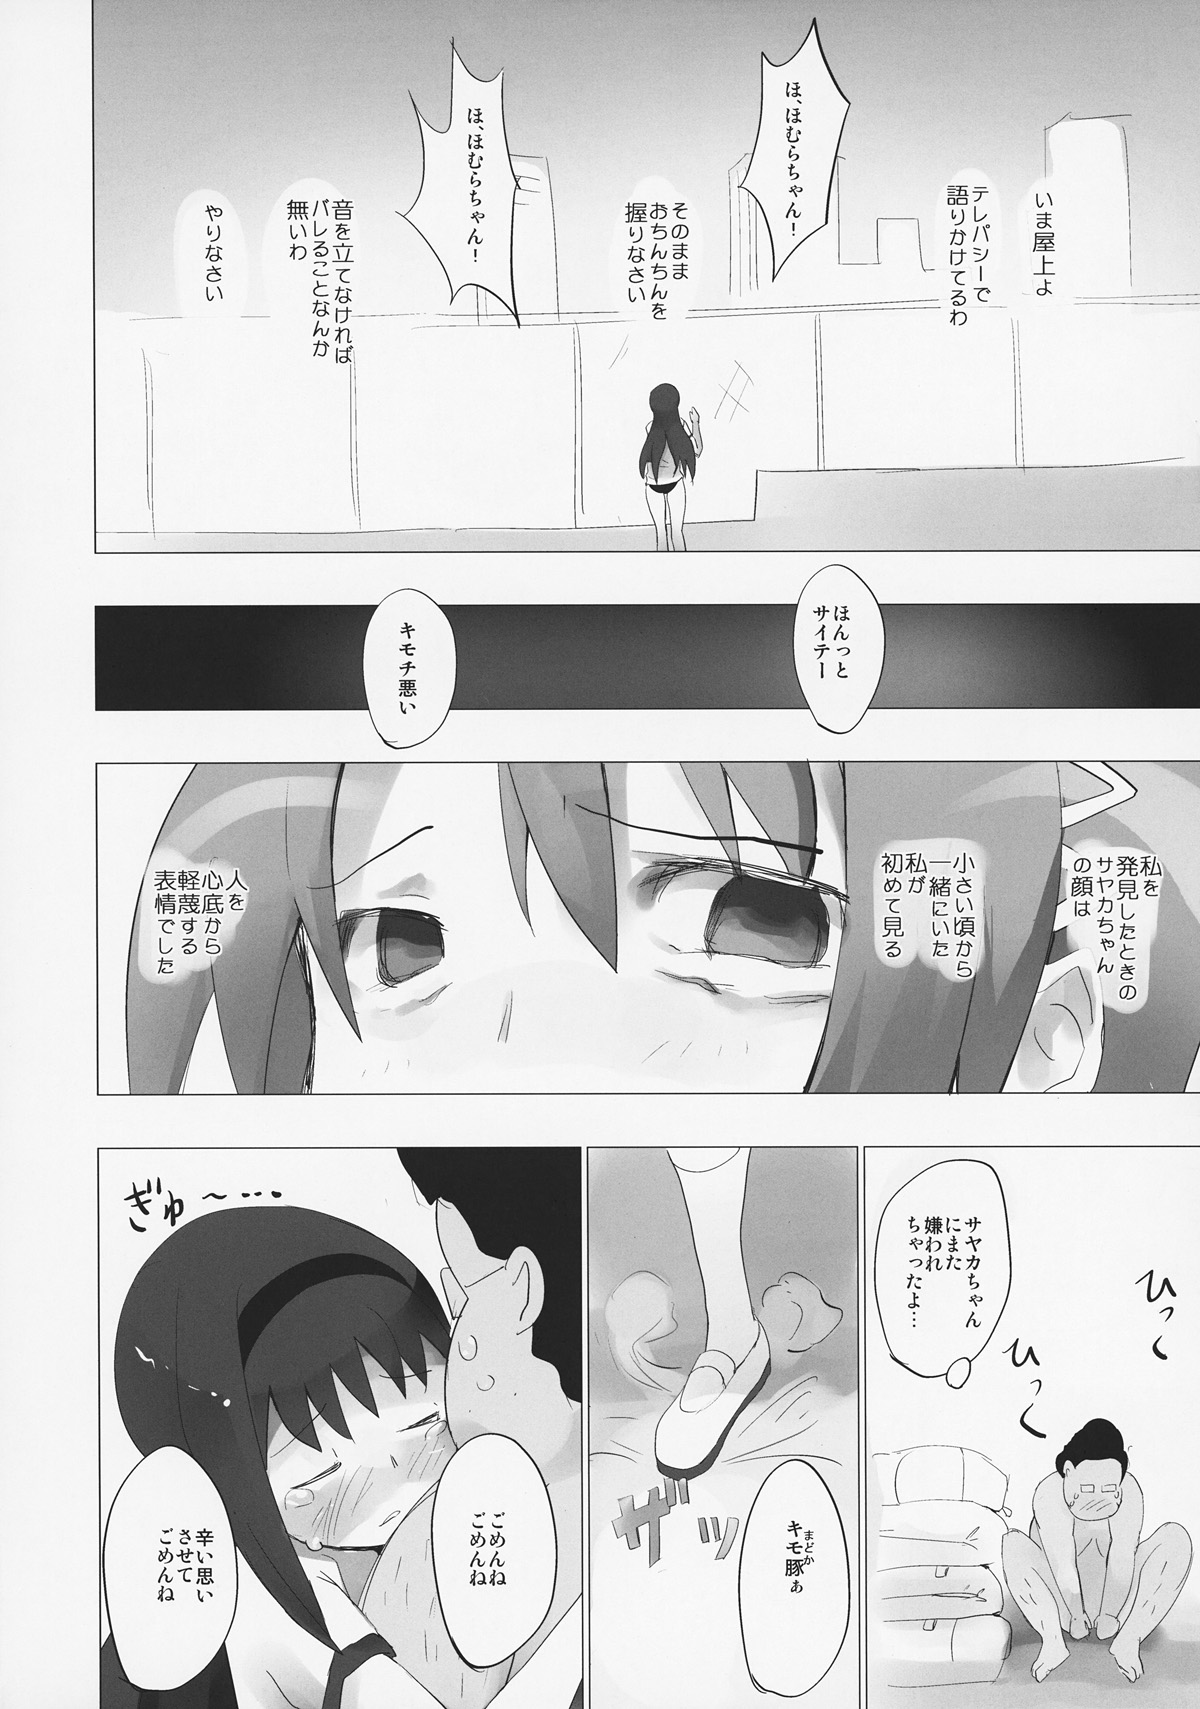 (ComiComi 15) [Tanpopo (Anshin Mama)] Homu to Senpai ga Kimoota no Madoka wo Toriatte Yabai (Puella Magi Madoka Magica) page 15 full